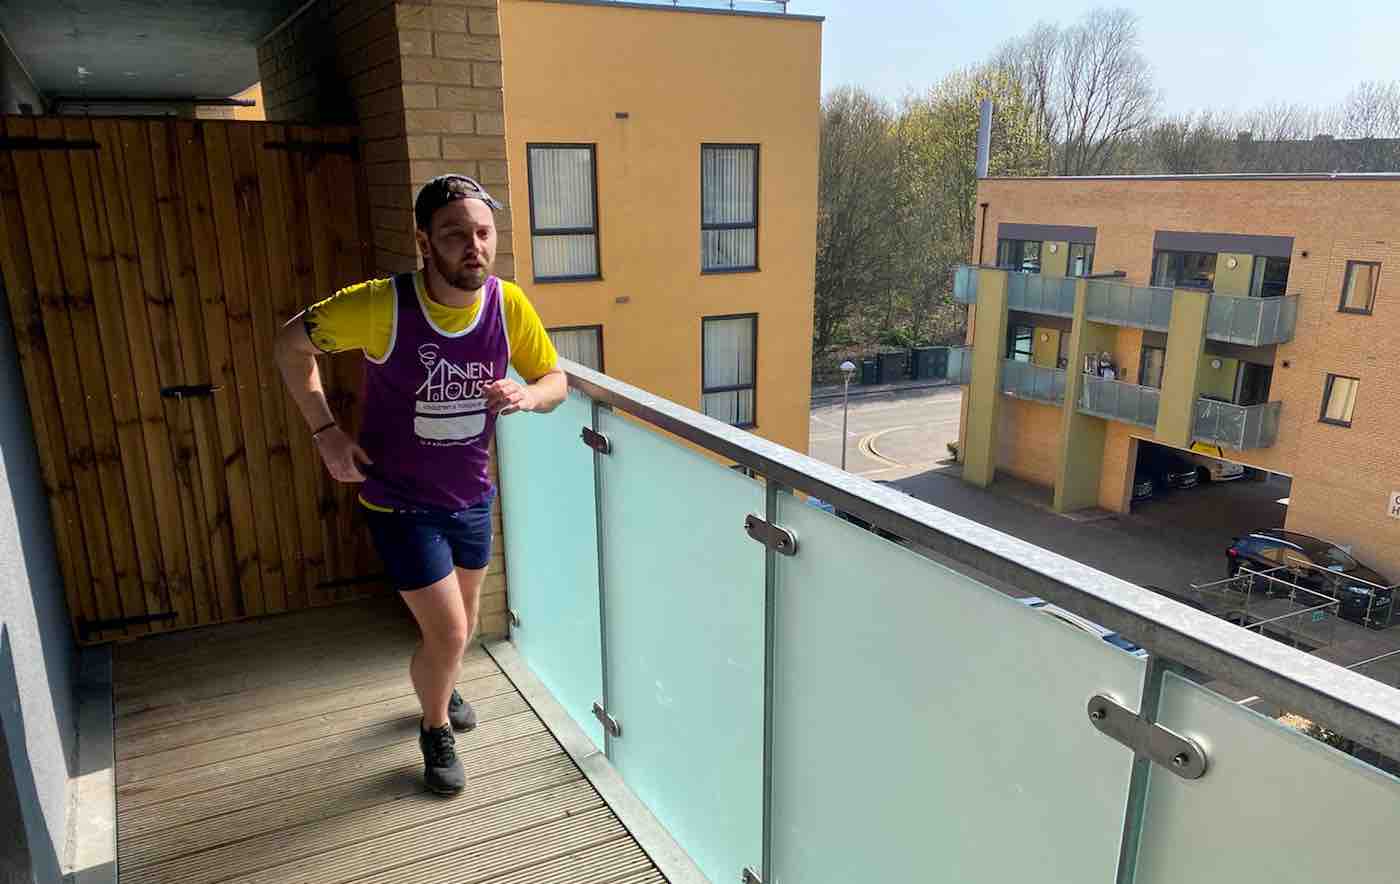 Pria dengan Teguh Menyelesaikan Half-Marathon di Balkonnya untuk Amal Setelah Penutupan COVID-19